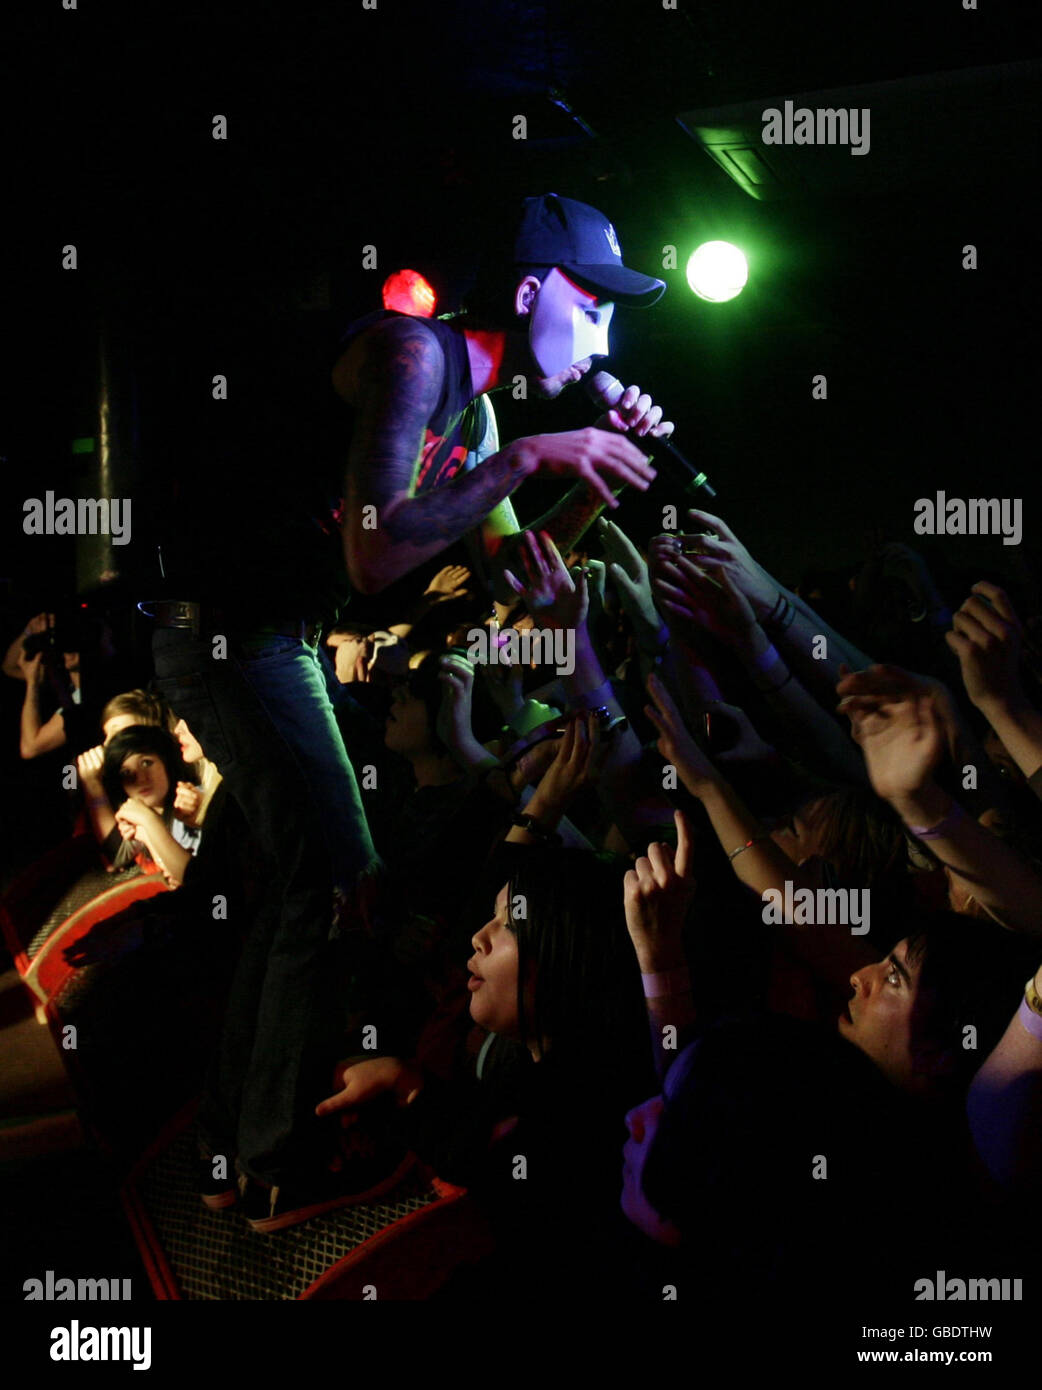 PARA . Banda ESTADOUNIDENSE Hollywood Undead en el escenario durante su concierto en el Camden Underworld en el norte de Londres. Foto de stock